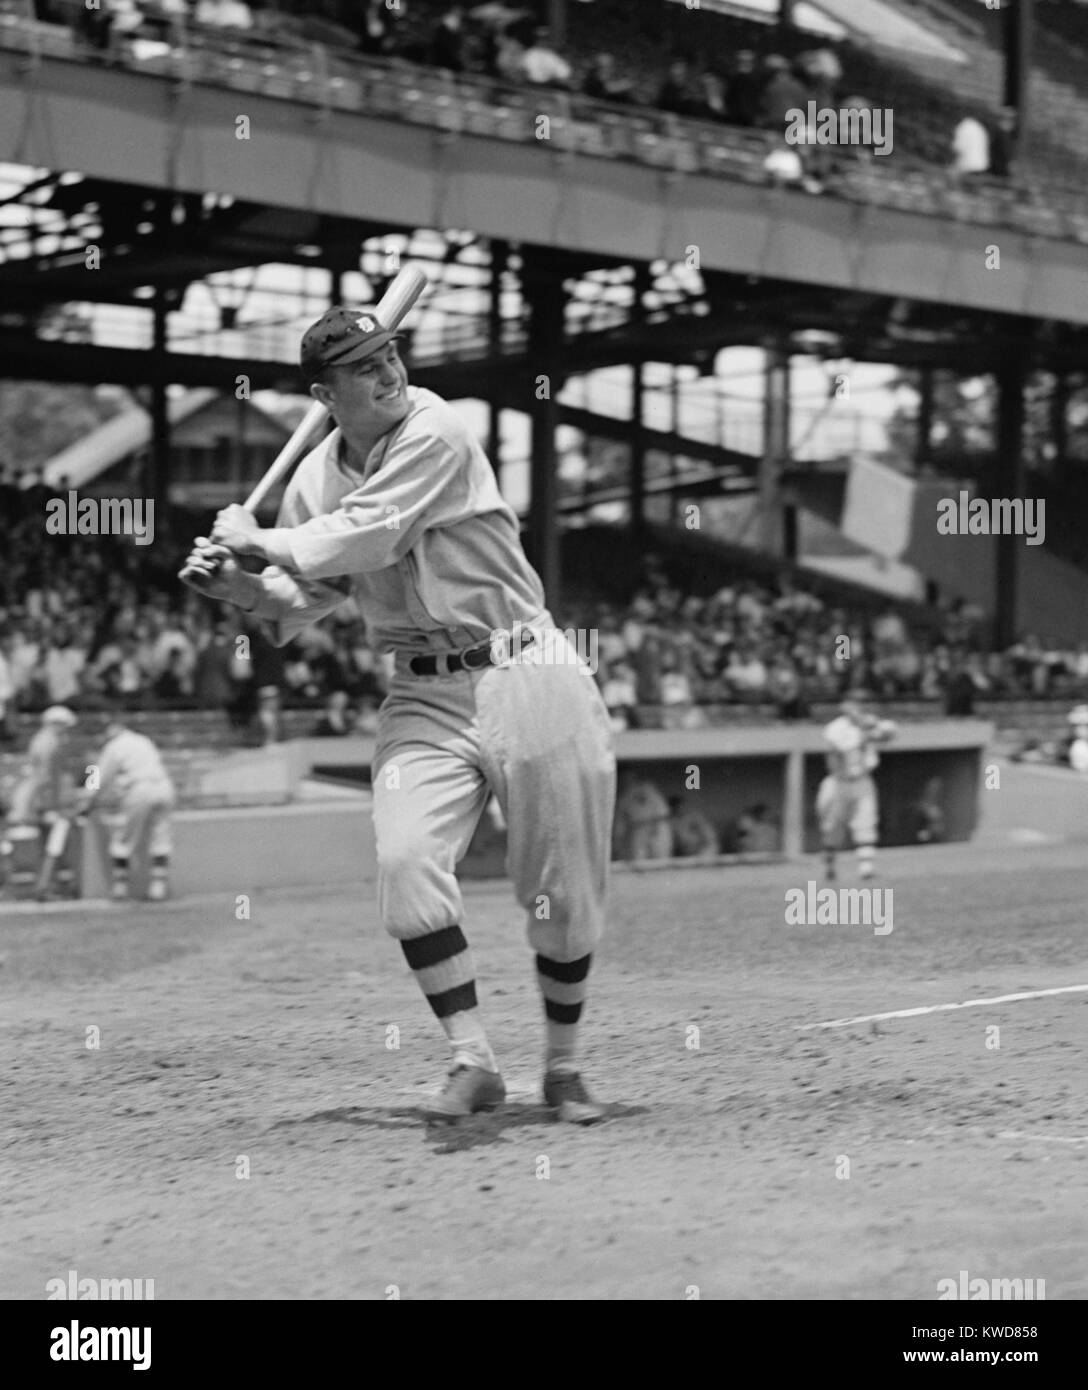 Heinie Manush in schlagenden Haltung in seinem zweiten Major League Saison mit den Detroit Tigers, 1924. Manush gewann der American League batting Titel im Jahr 1926 mit einem mit einem Schlagendurchschnitt von. 378. (BSLOC 2015 17 10) Stockfoto